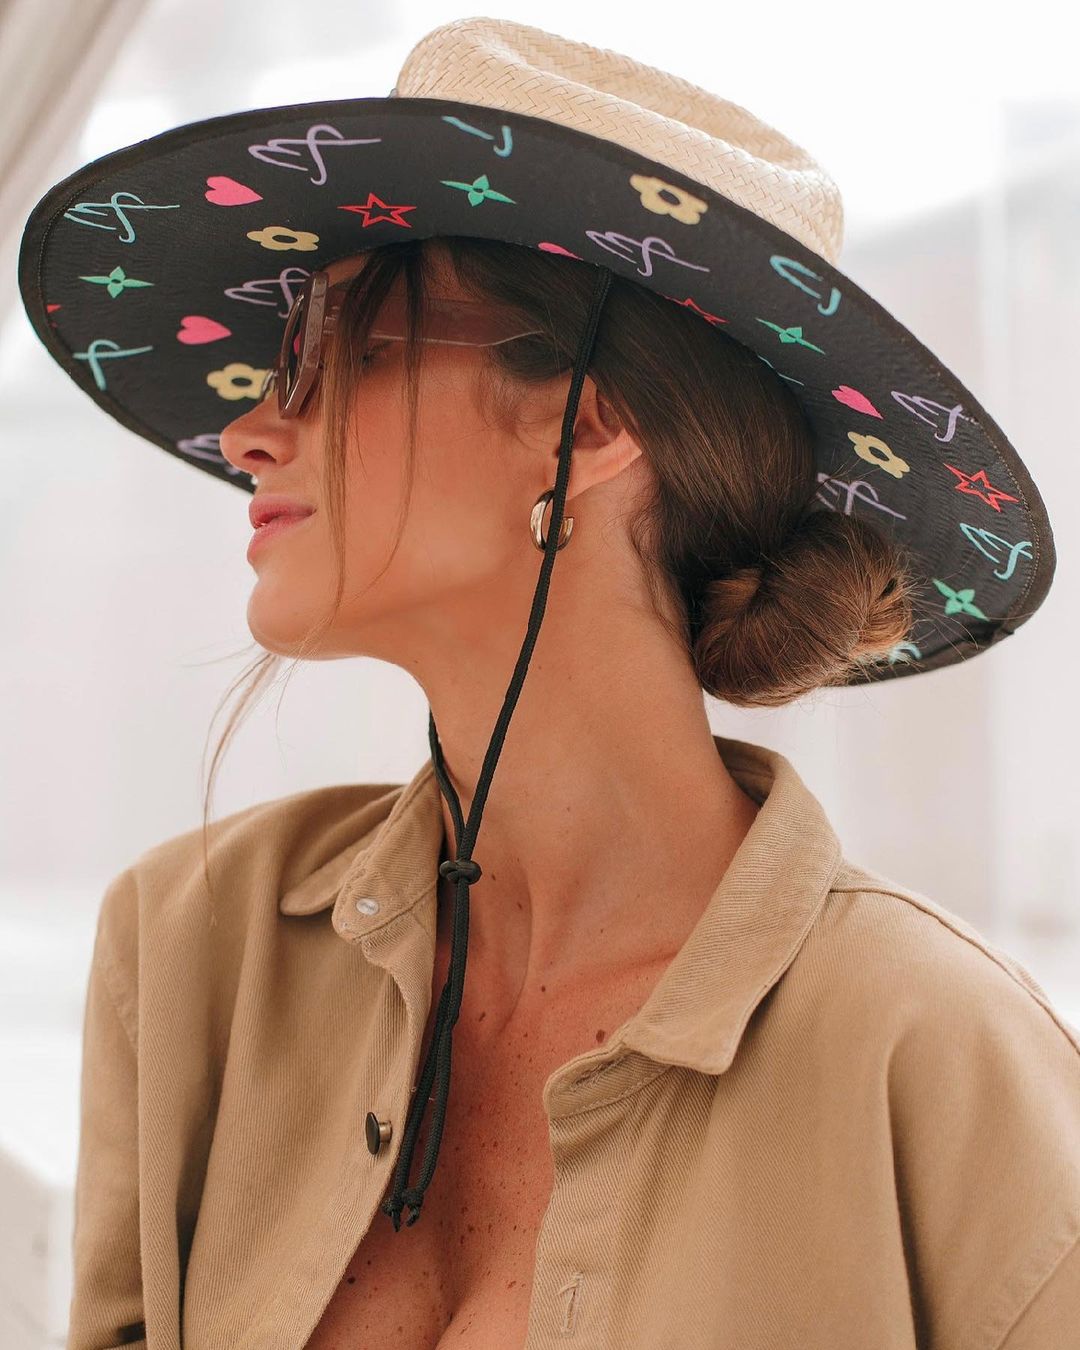 Imagem mostra mulher de chapéu - chapéu para cabelo curto